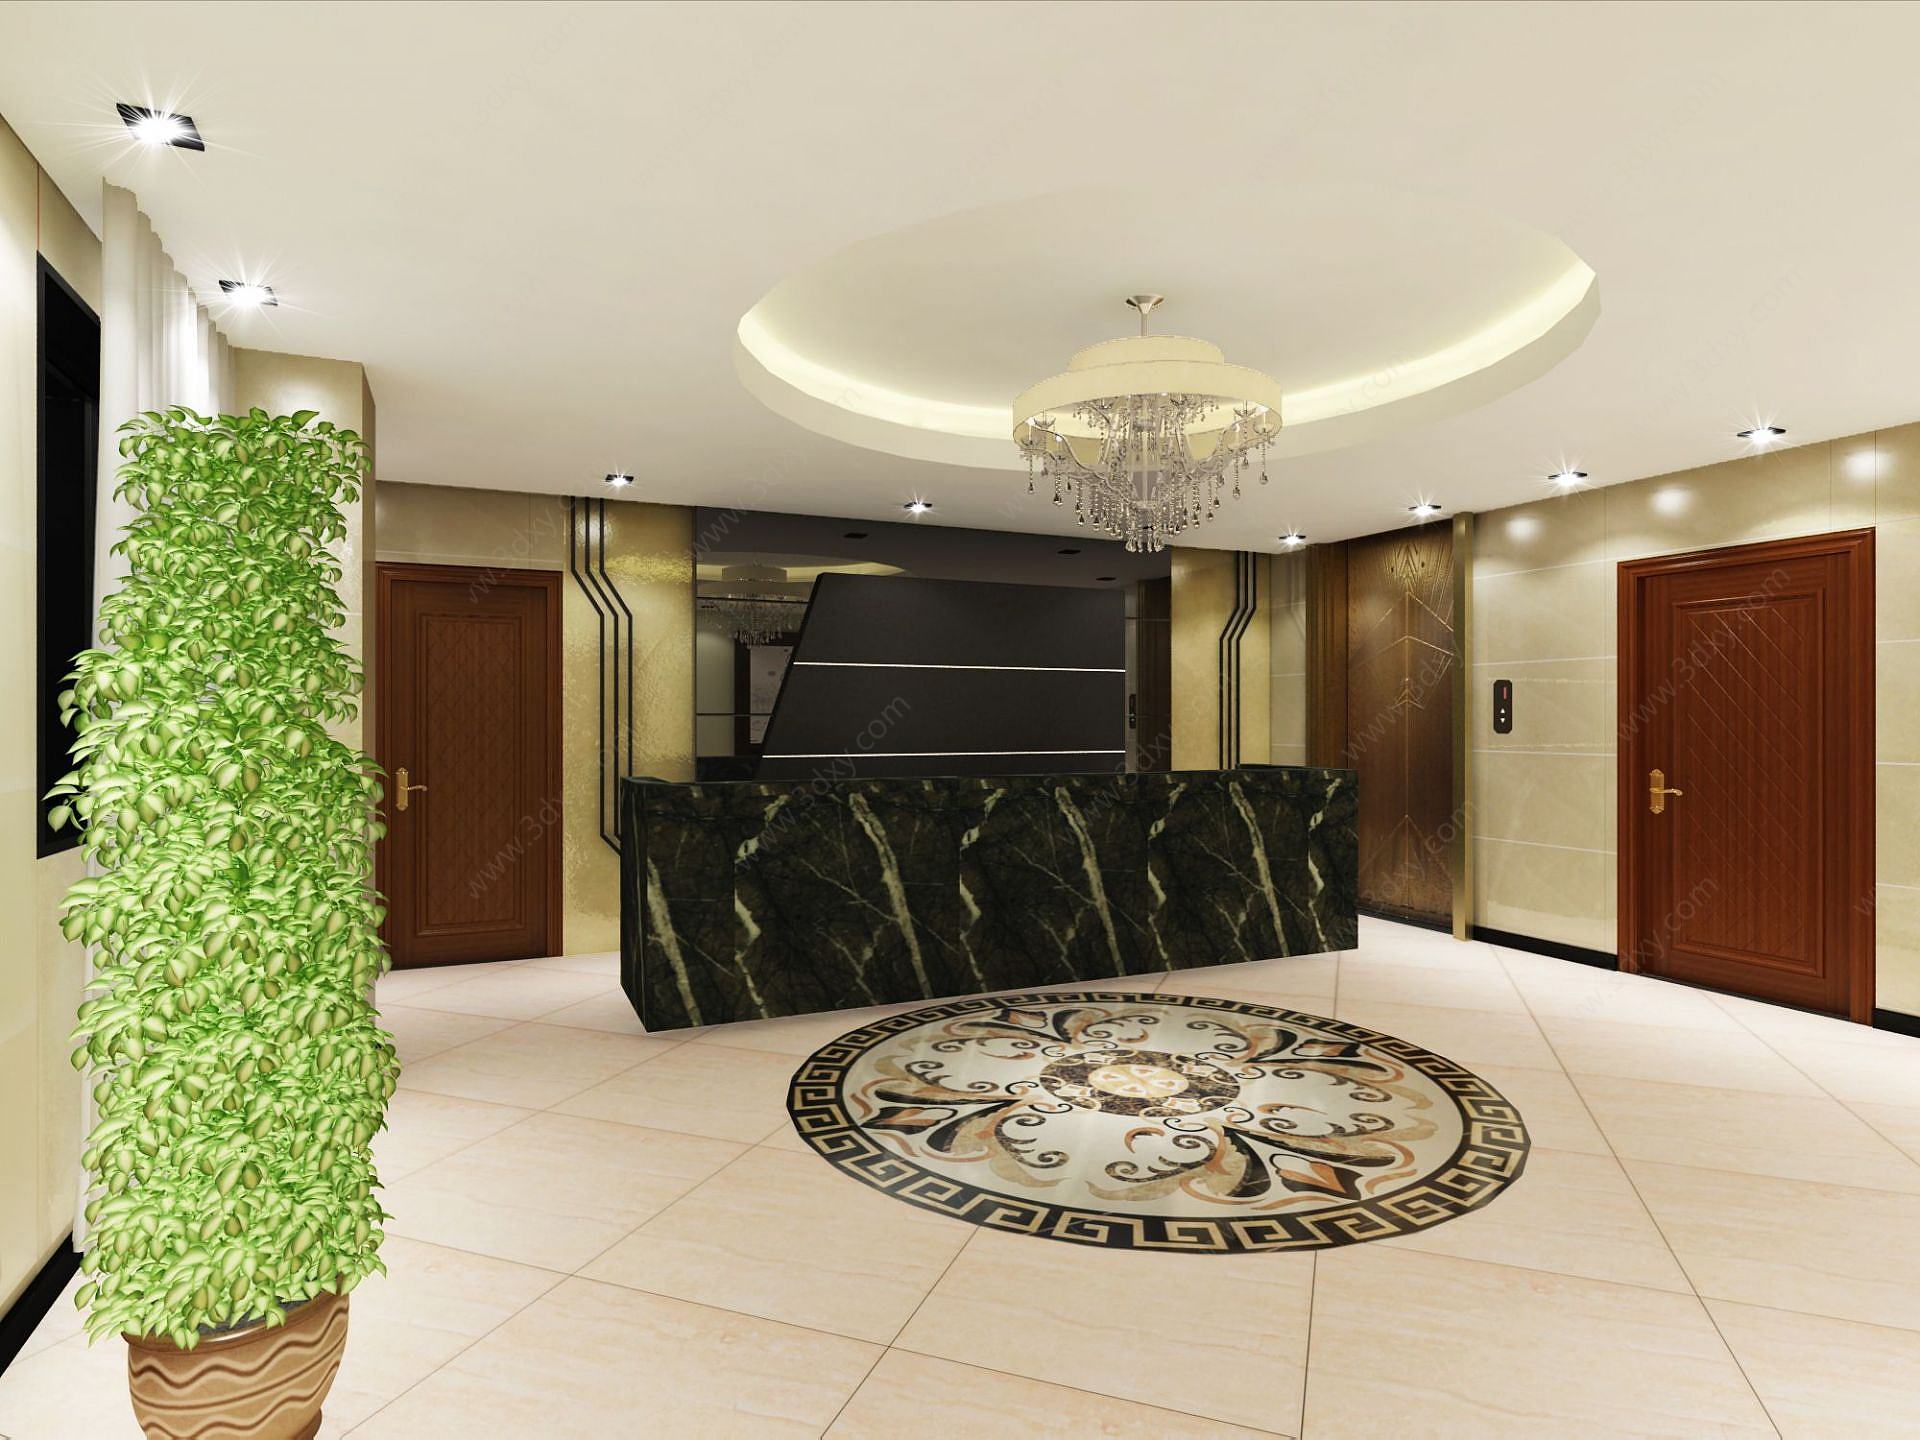 酒店走廊休息室客房3D模型